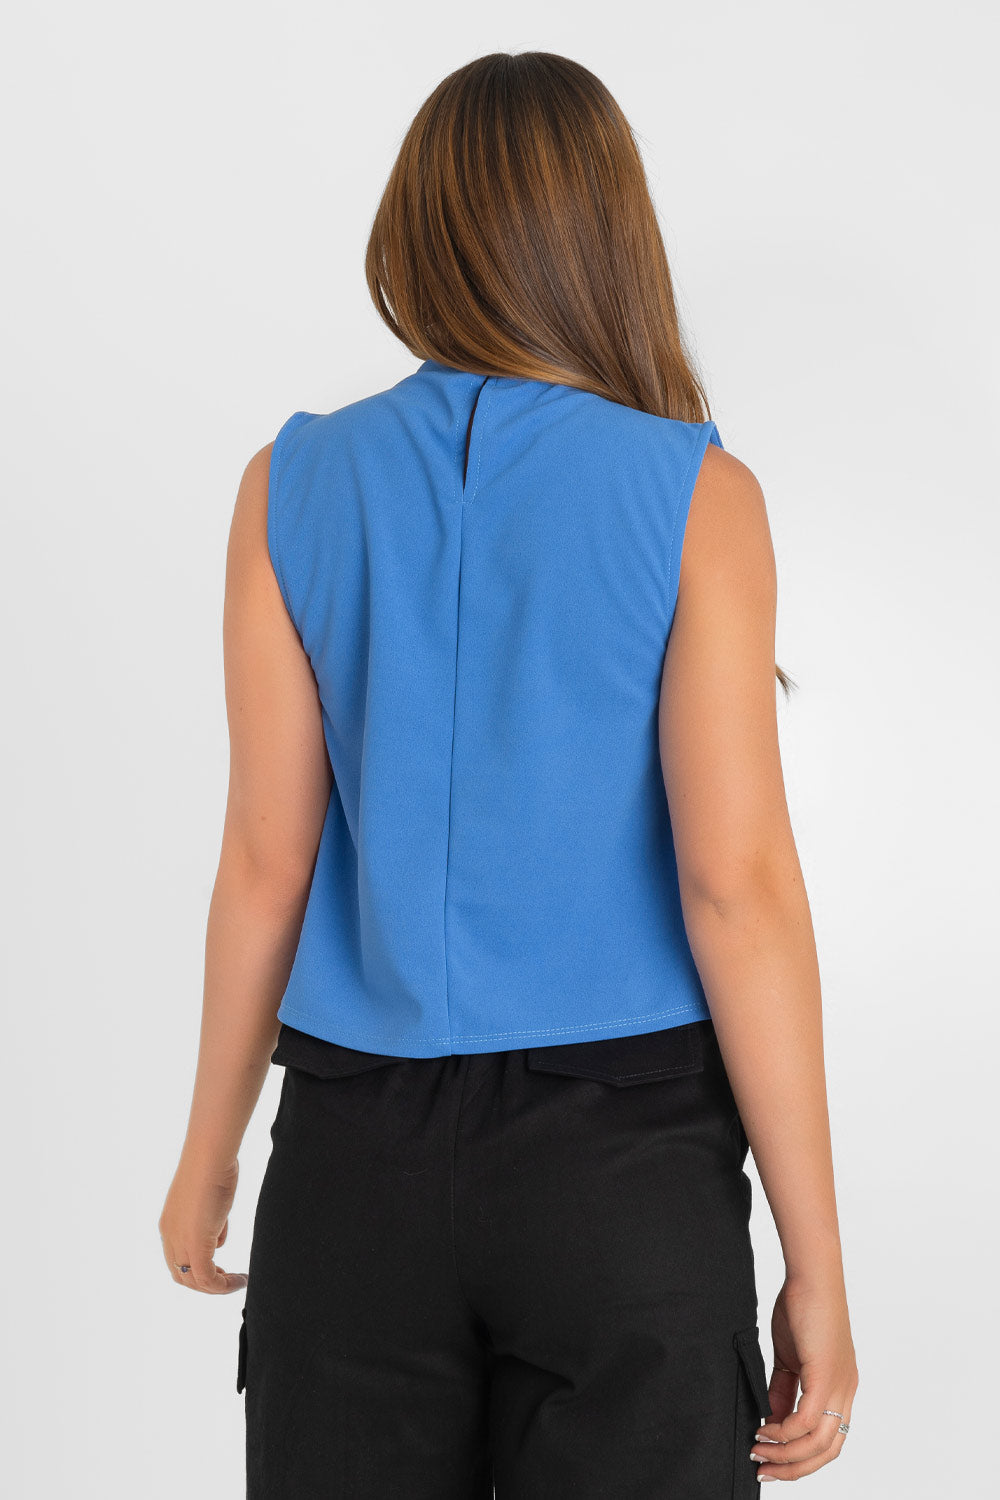 Blusa sin mangas de fit recto, cuello mock con detalles plisados y cierre posterior con botón y ojal.